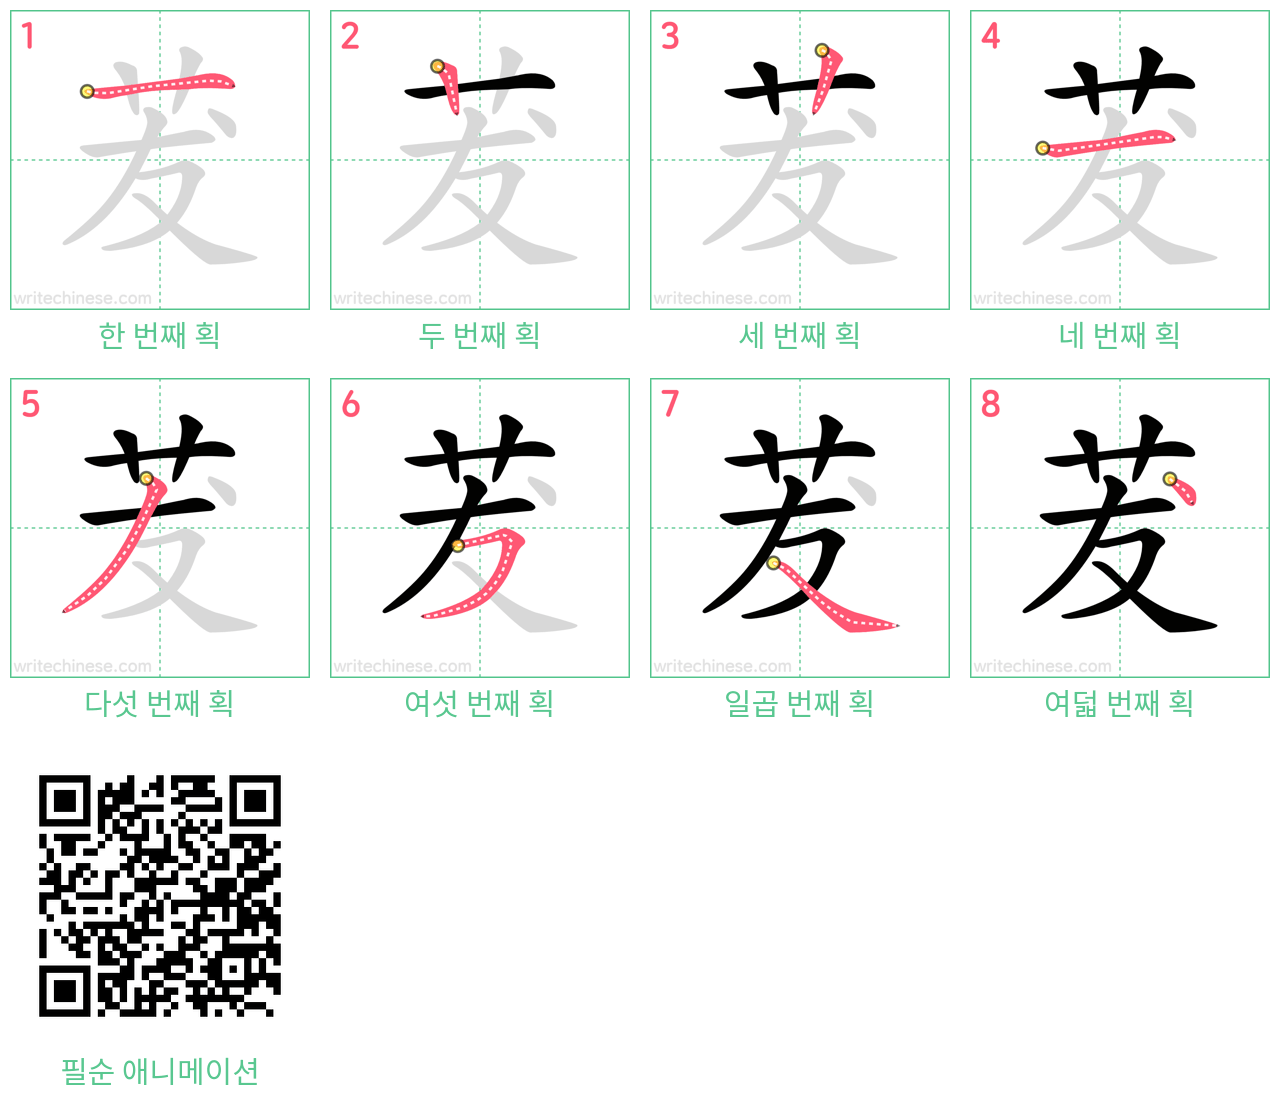 茇 step-by-step stroke order diagrams